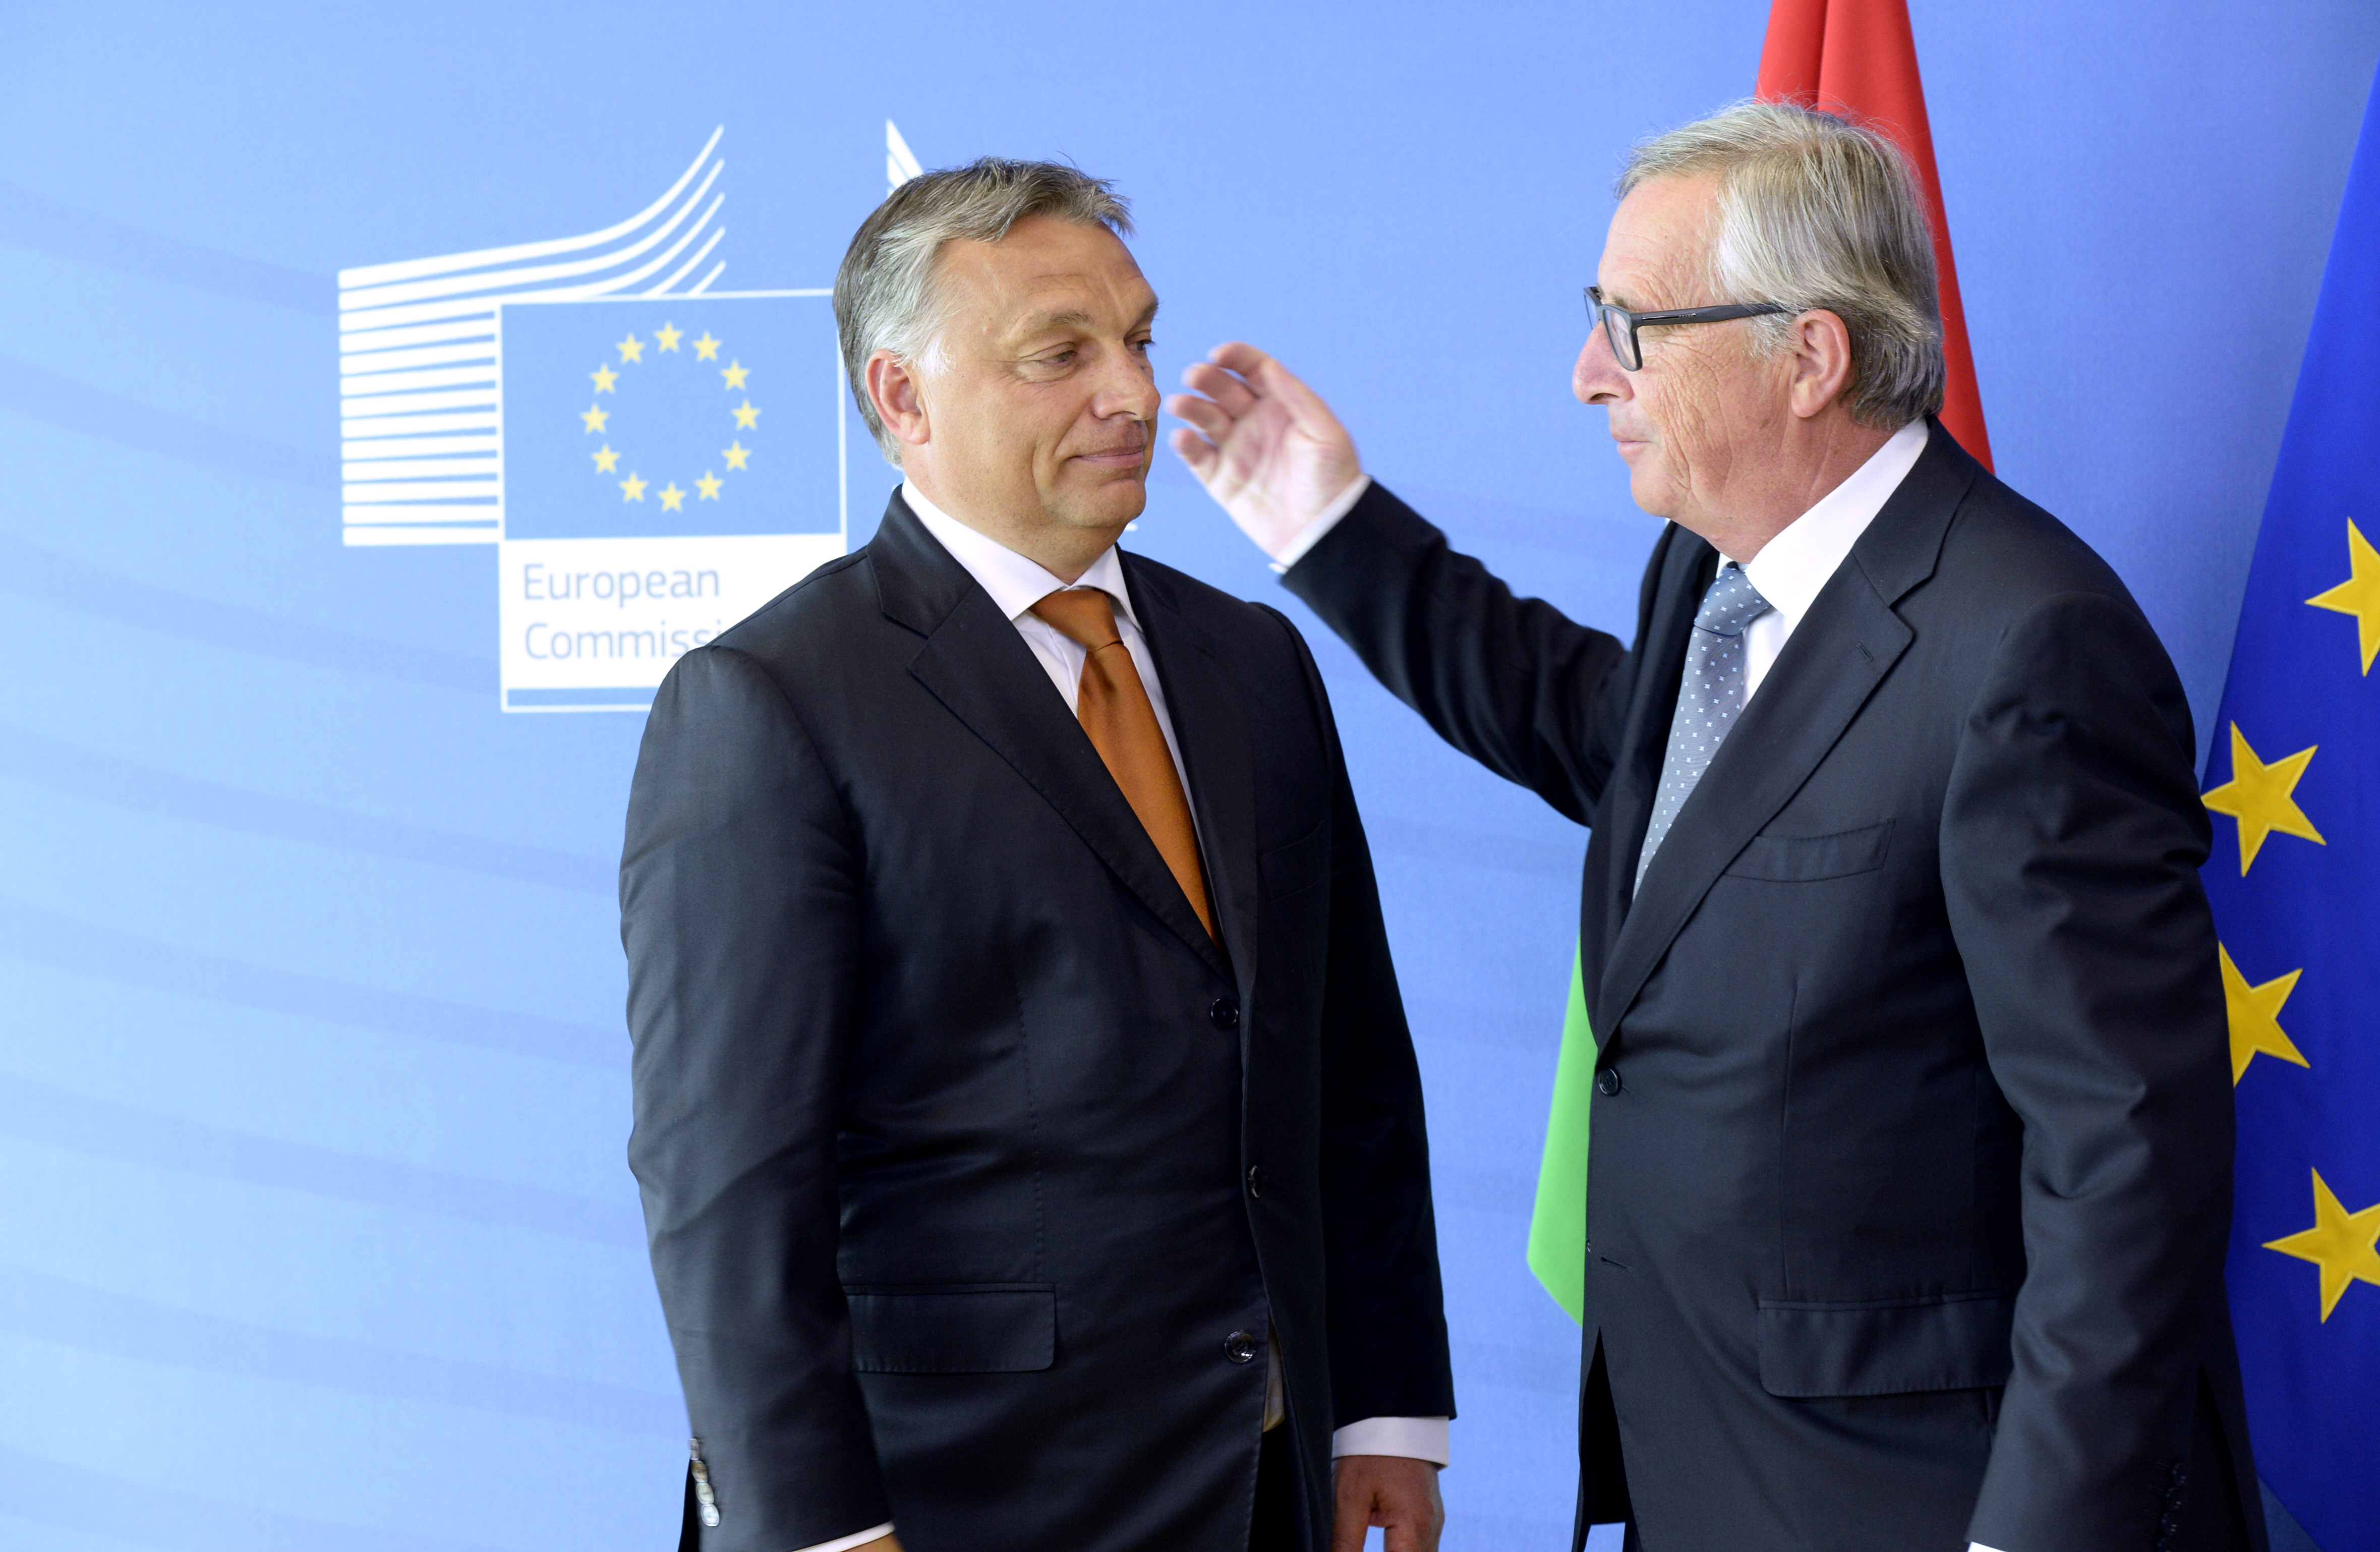 Ami sok, az sok - üzente Juncker a Fidesznek